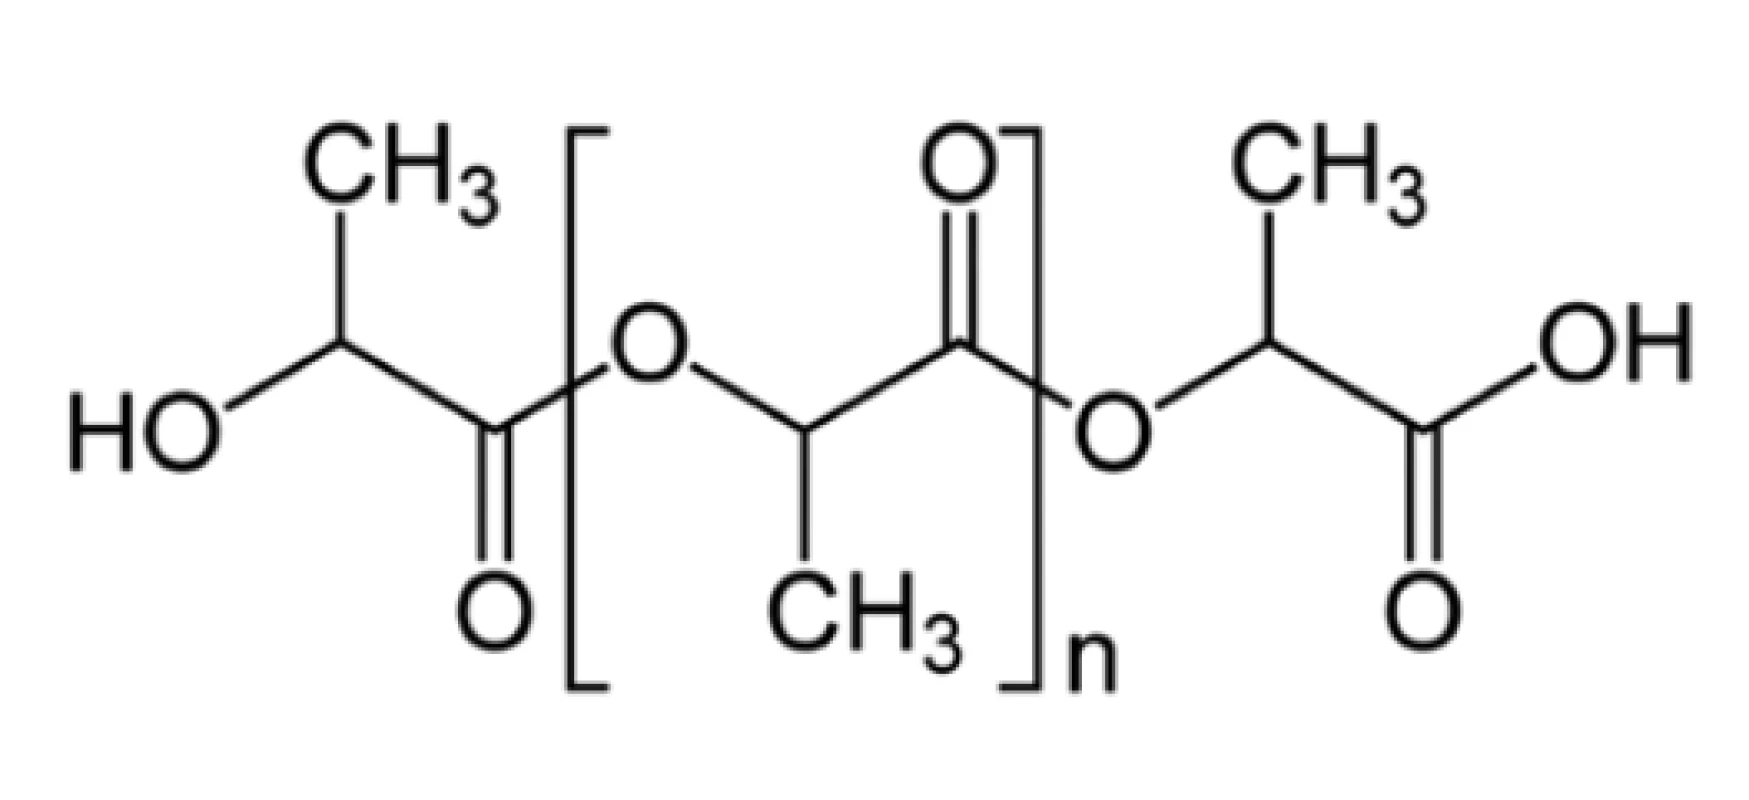 Chemická struktura PLA<br>
Fig. 1: Chemical structure of PLA